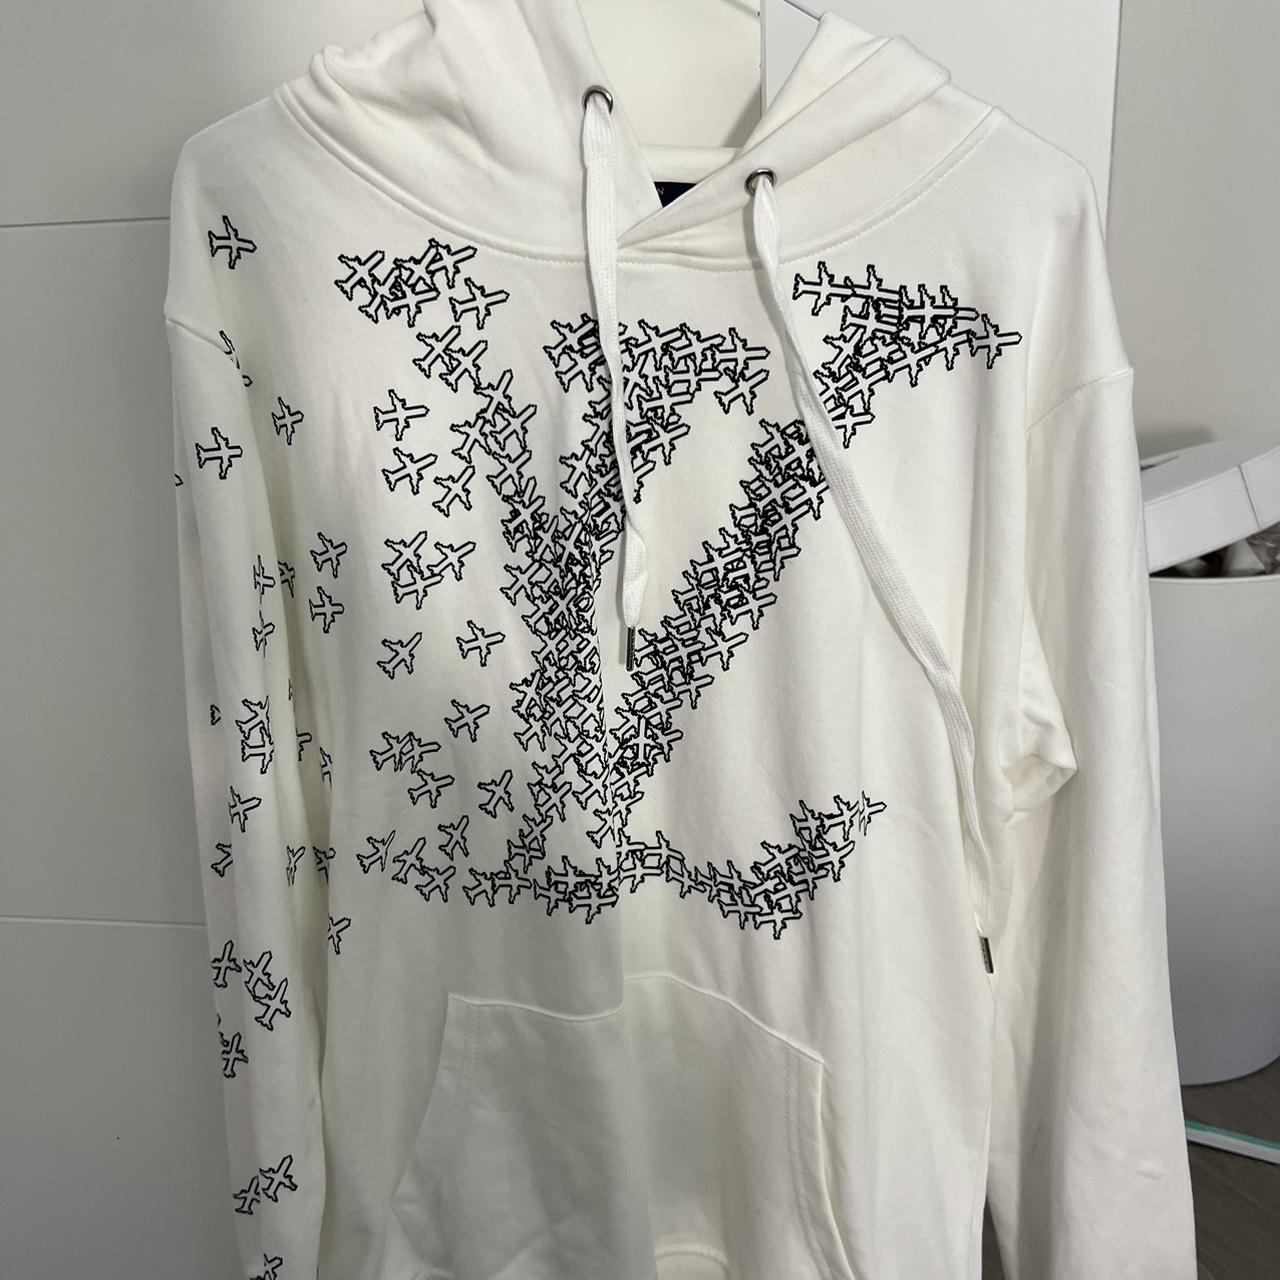 Louis Vuitton hoodie - Depop